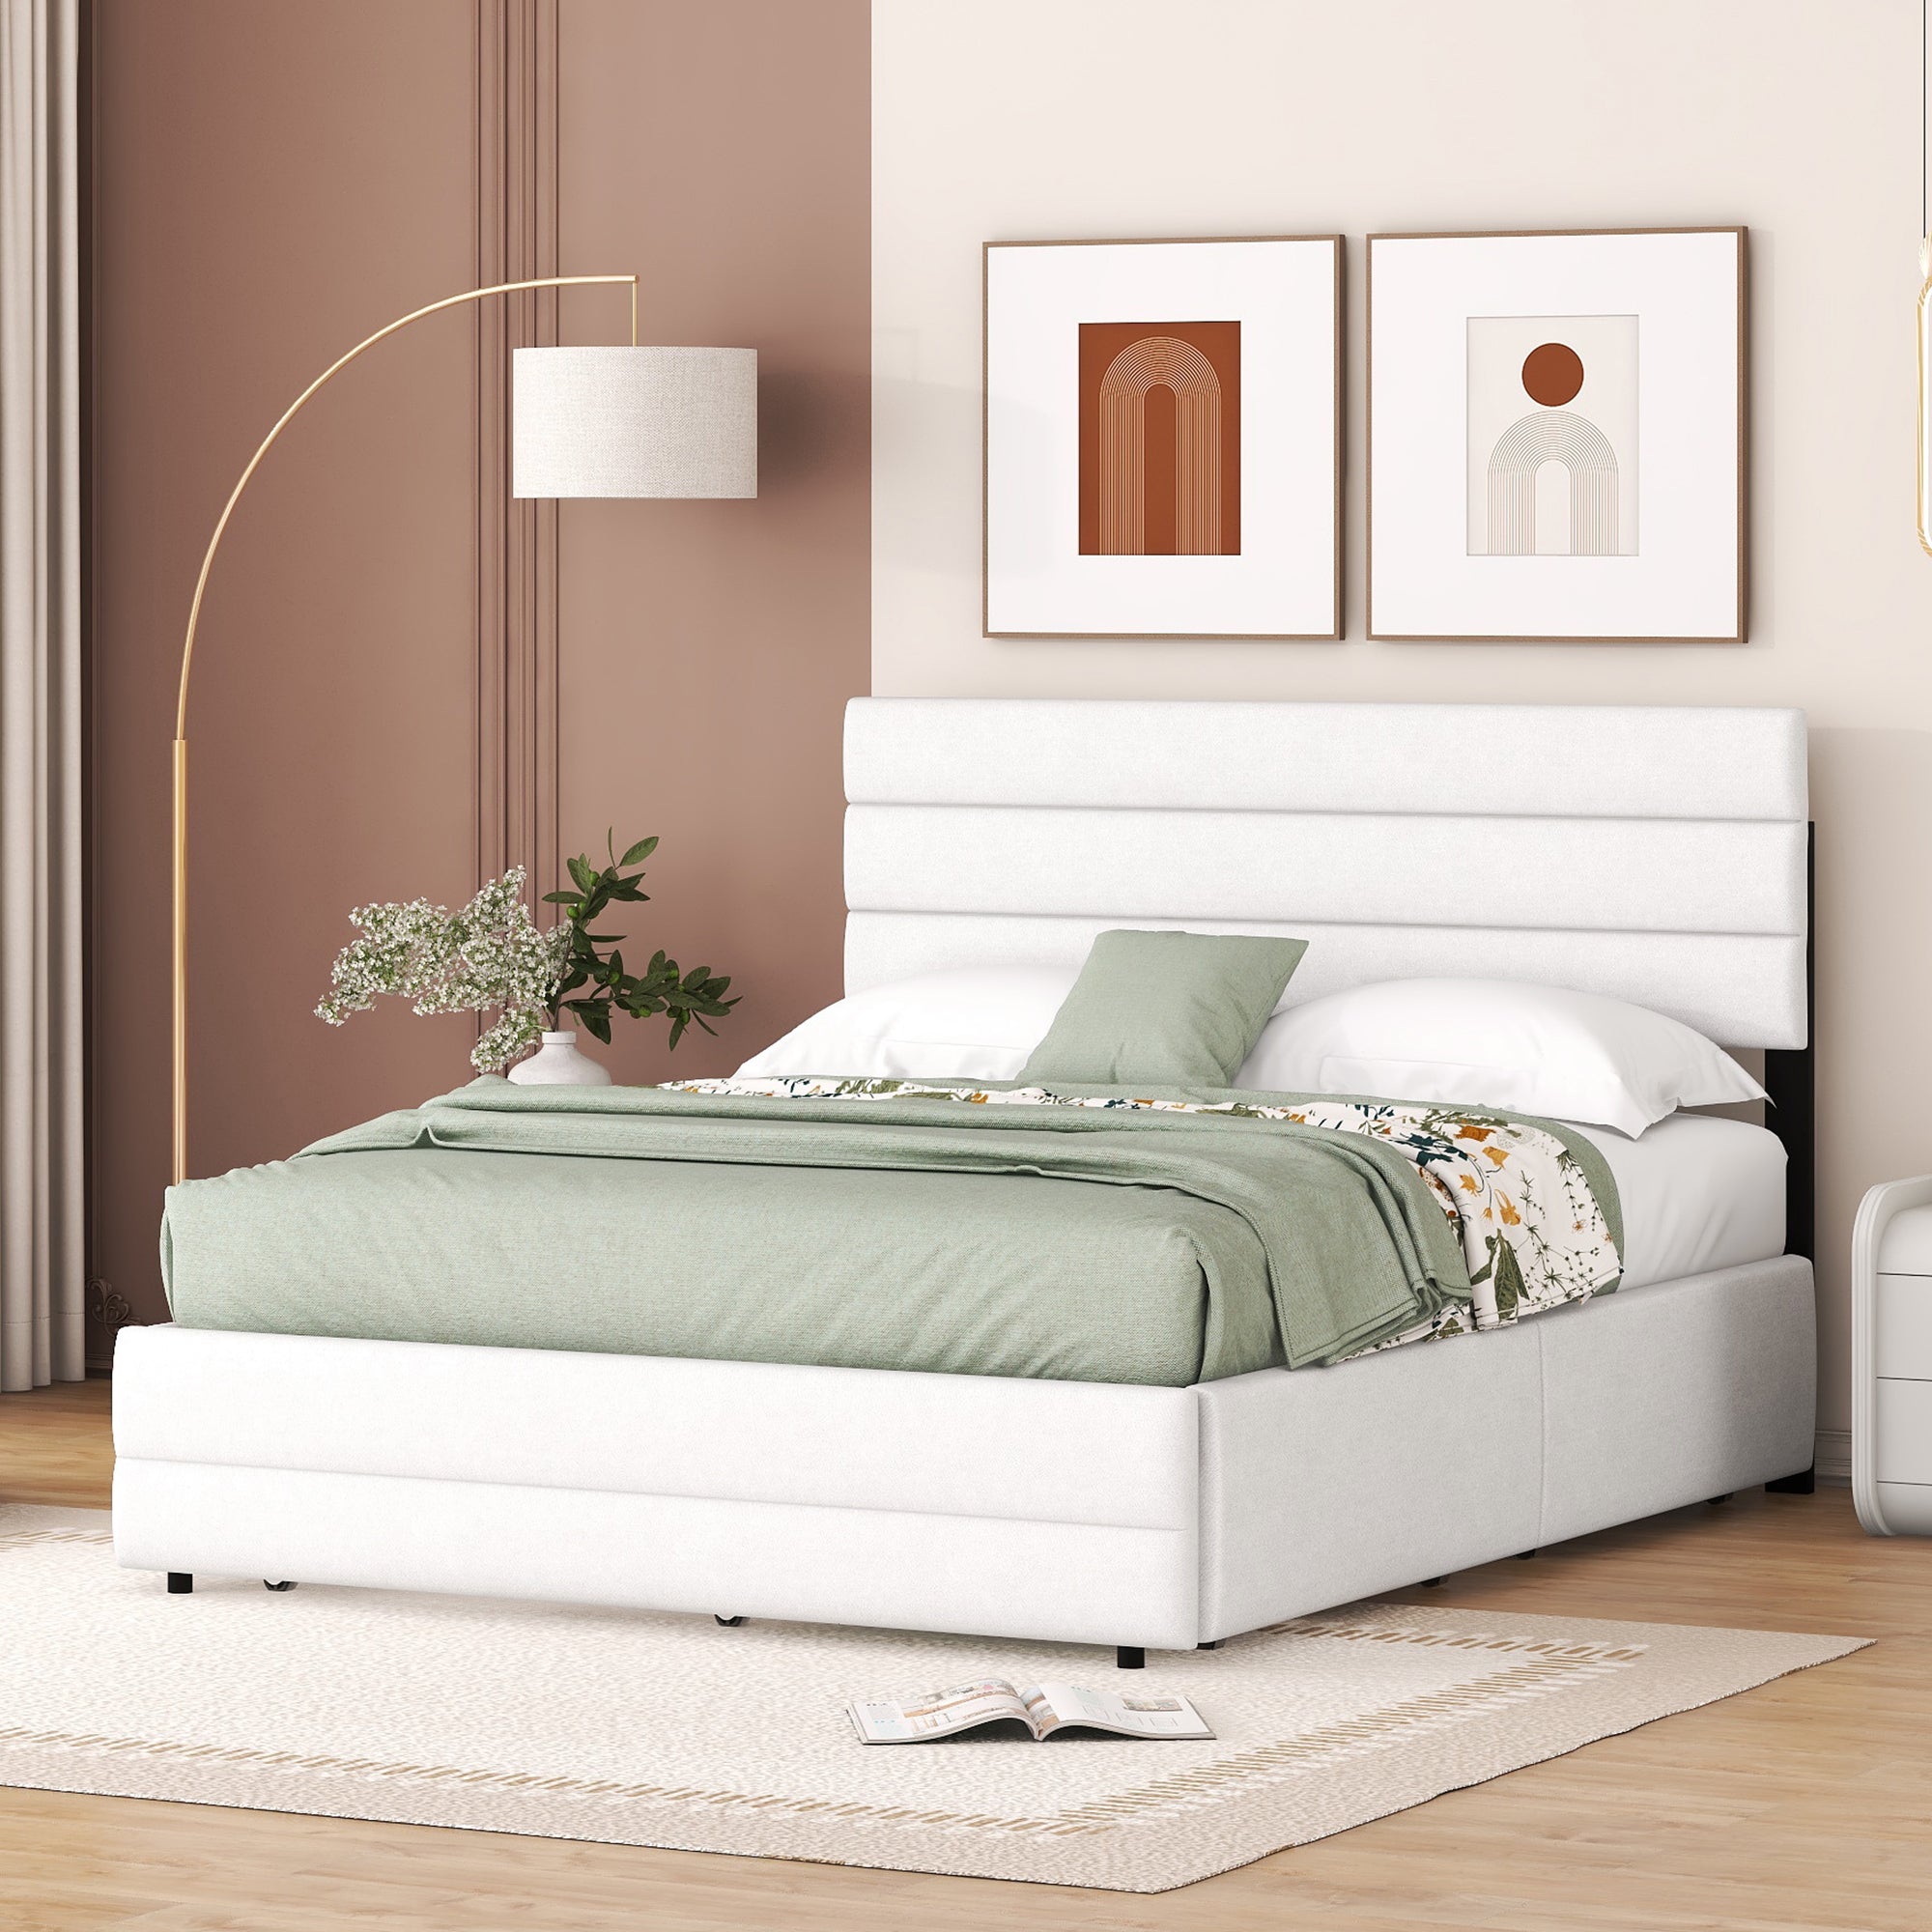 okwish 140 x 200 cm Plattformbett, gepolstertes Bett, mit Zwei-Personen-Brosche und zwei Schubladen, weiß